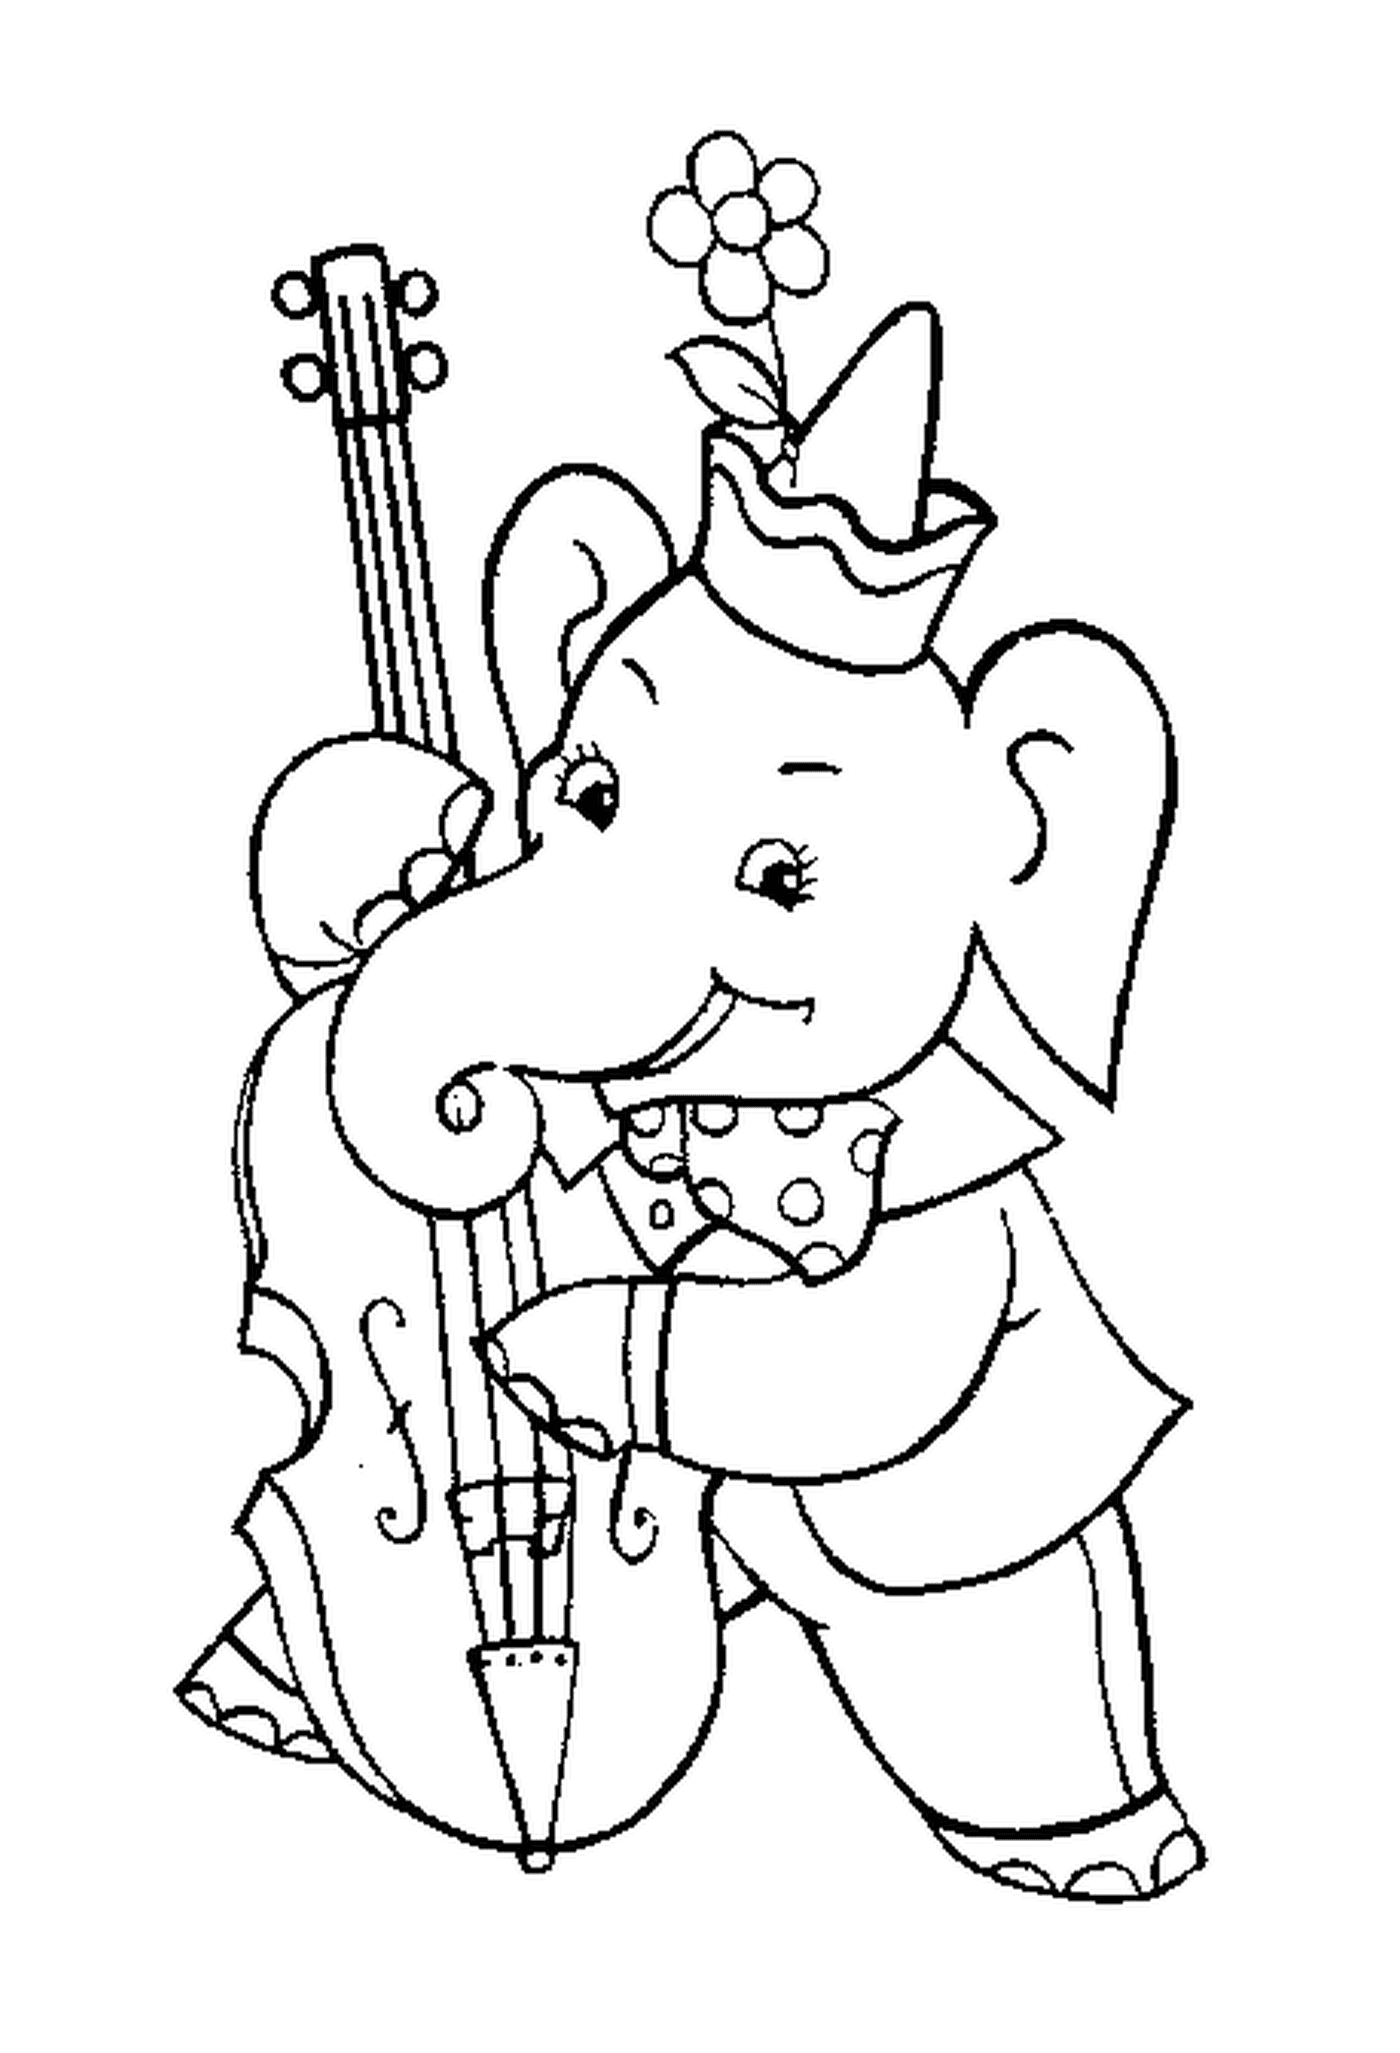  大象演奏大提琴 